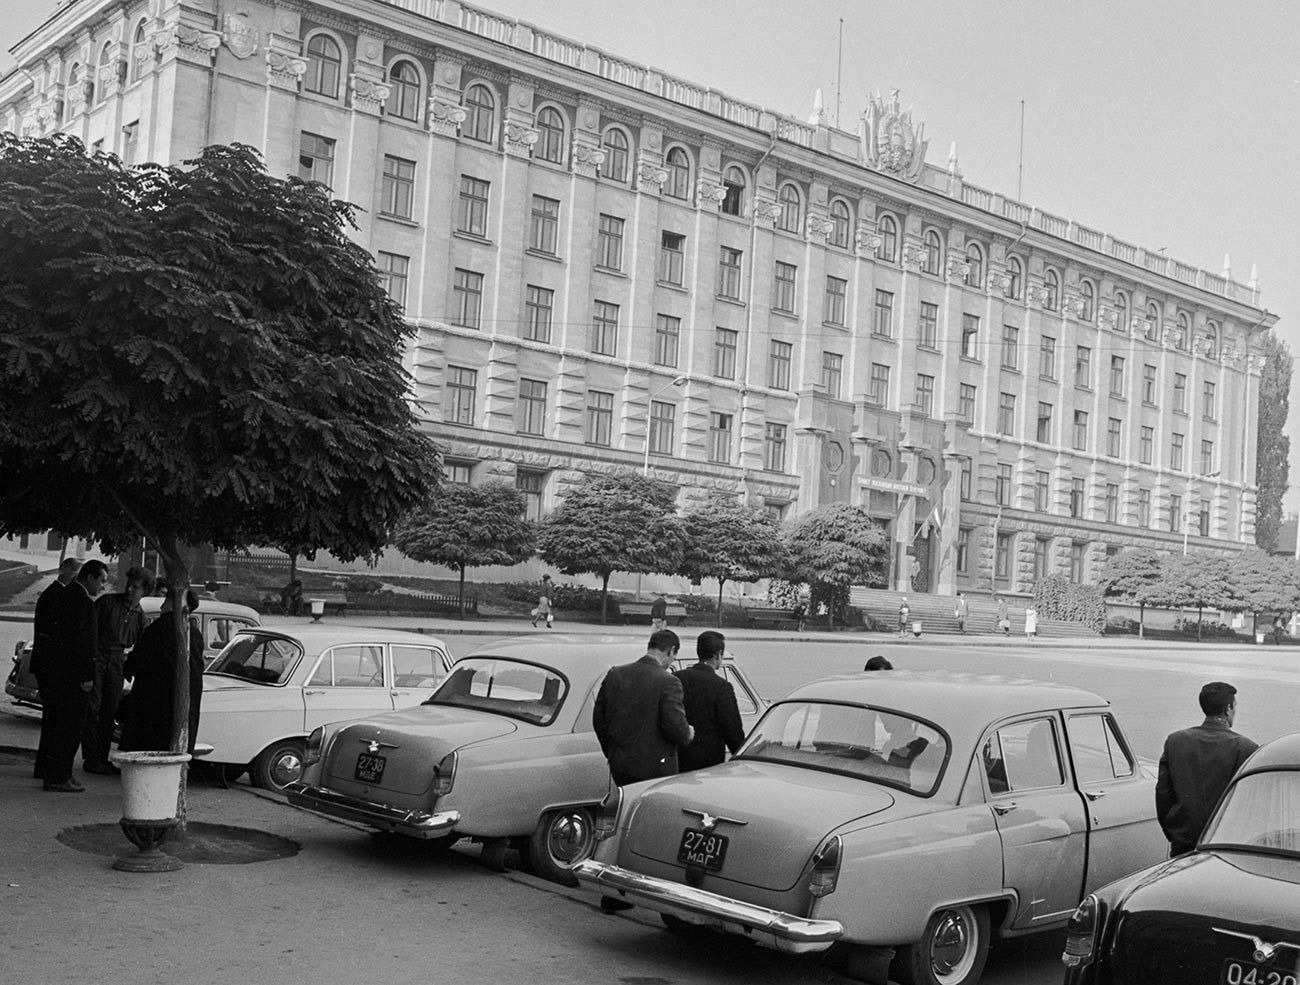 Académie des sciences de Moldavie, Chisinau, 1966
